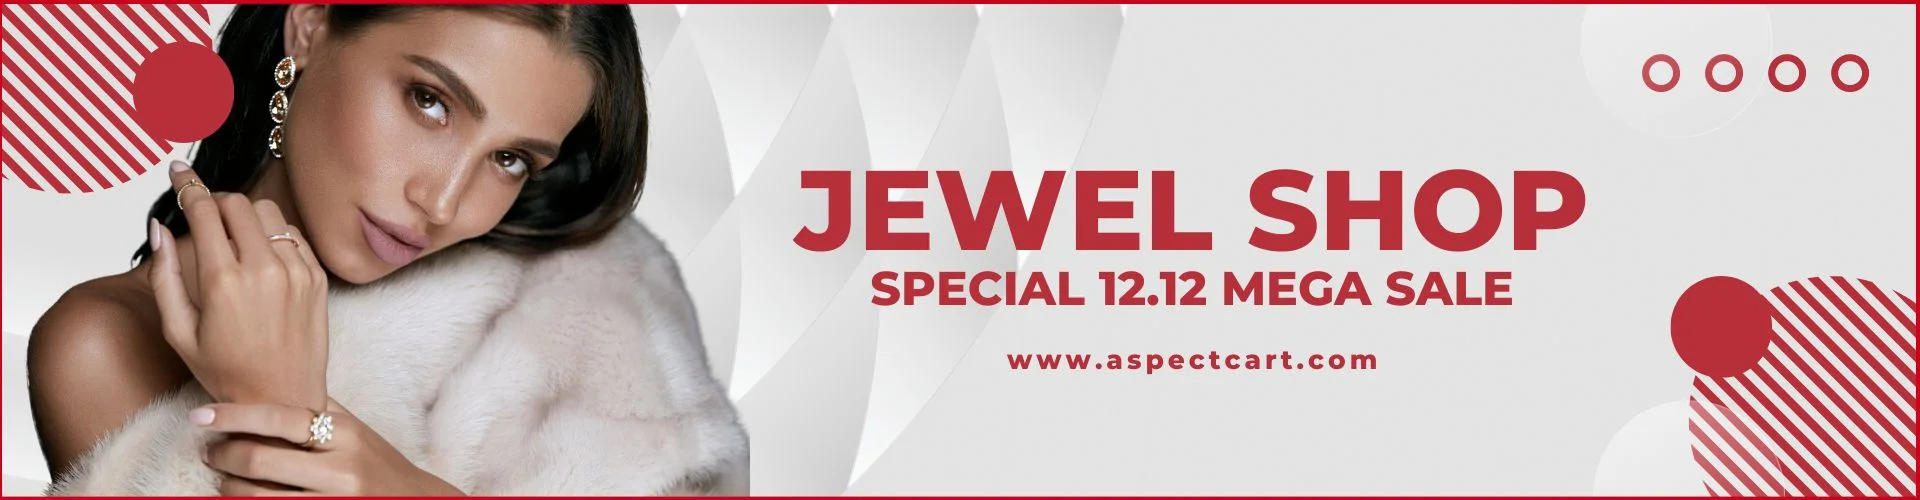 Banner som annonserar smyckeskollektionen i en online juvelbutik